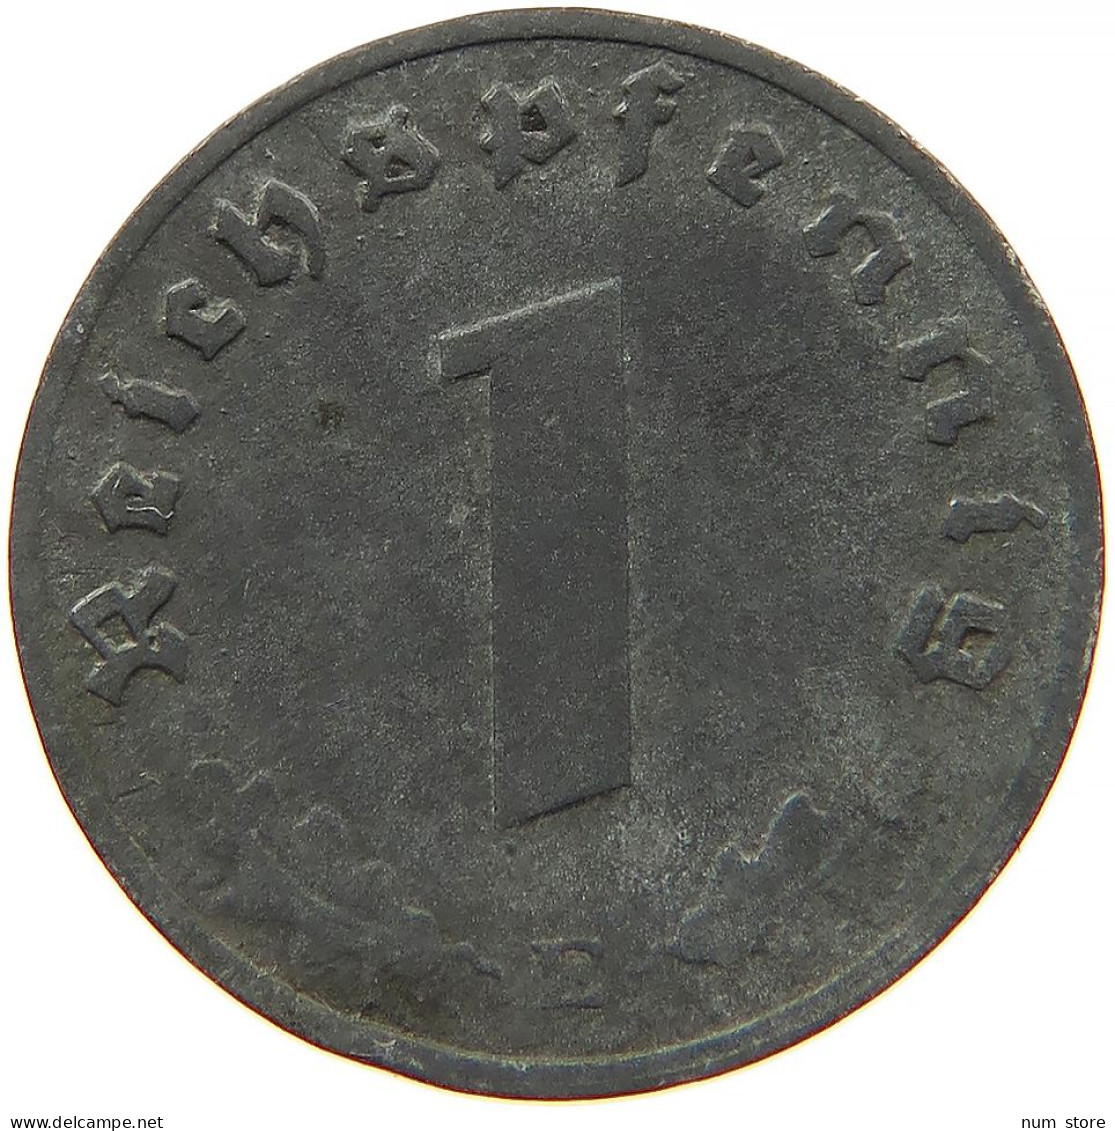 GERMANY 1 REICHSPFENNIG 1943 E #s091 0993 - 1 Reichspfennig